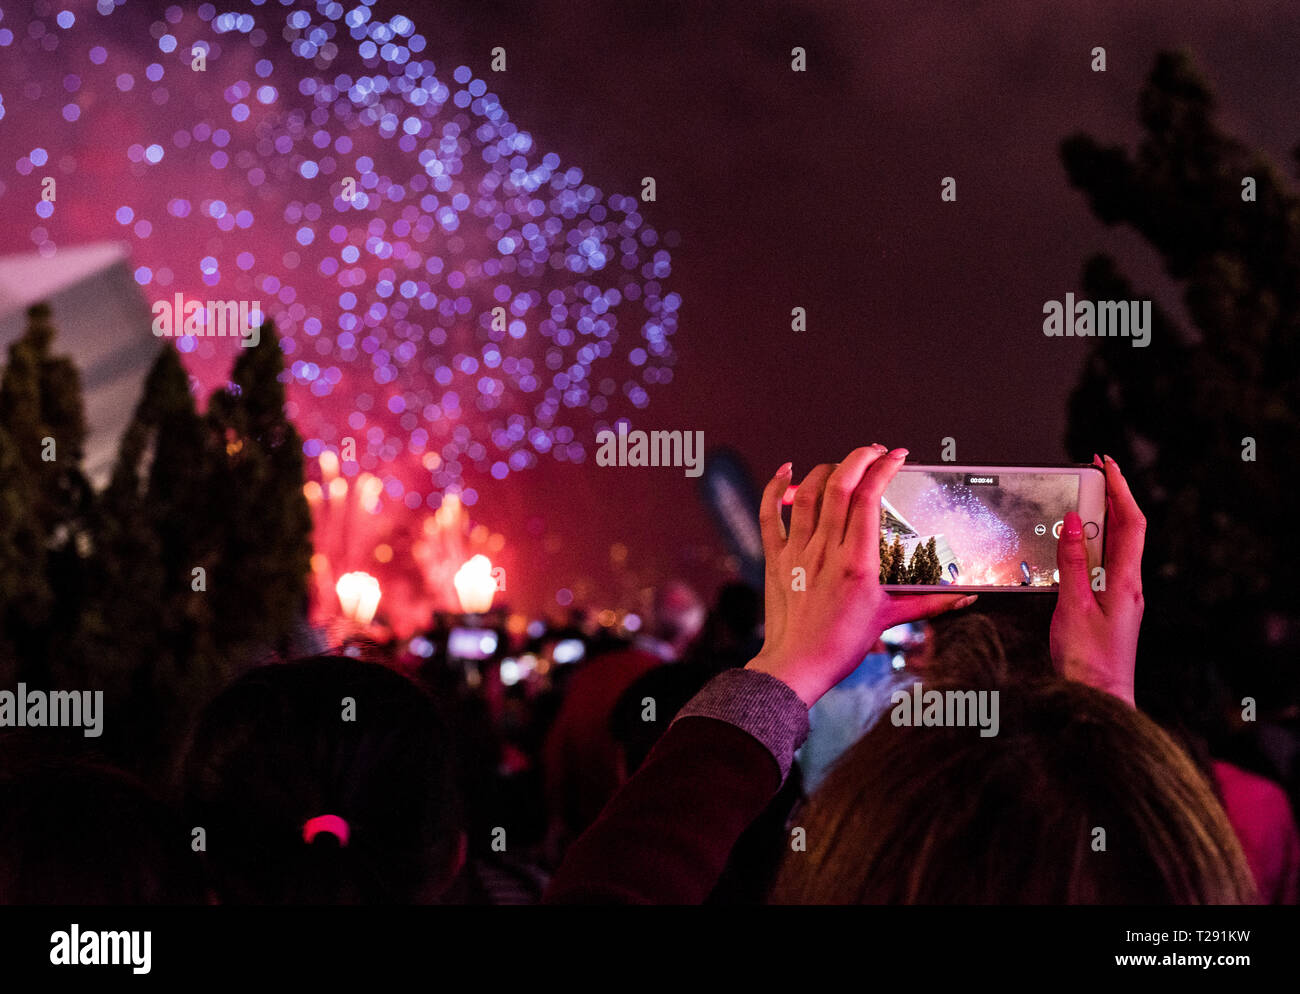 Photographier, à l'aide d'artifice femme smartphone, durant les célébrations du Nouvel An Chinois, Kowloon, Hong Kong Banque D'Images